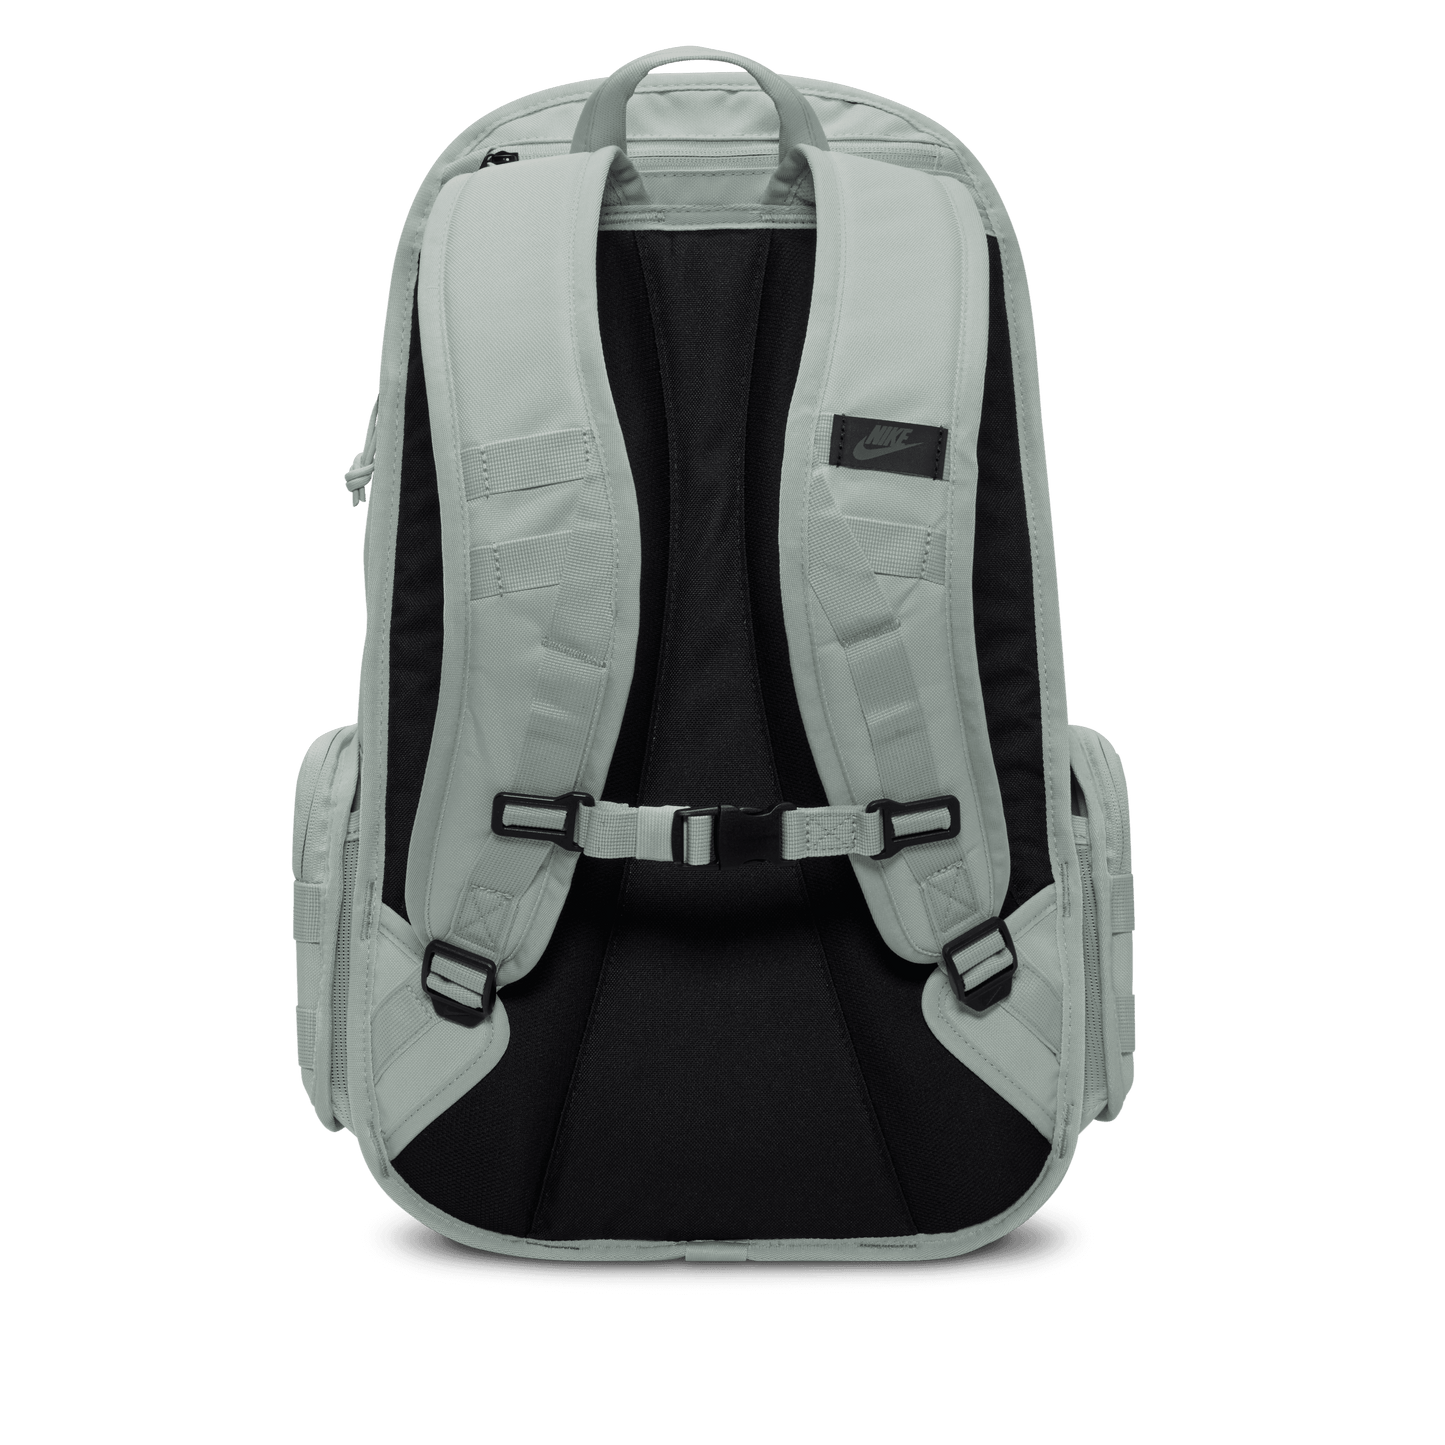 Nike Sportswear RPM Backpack Light Silver